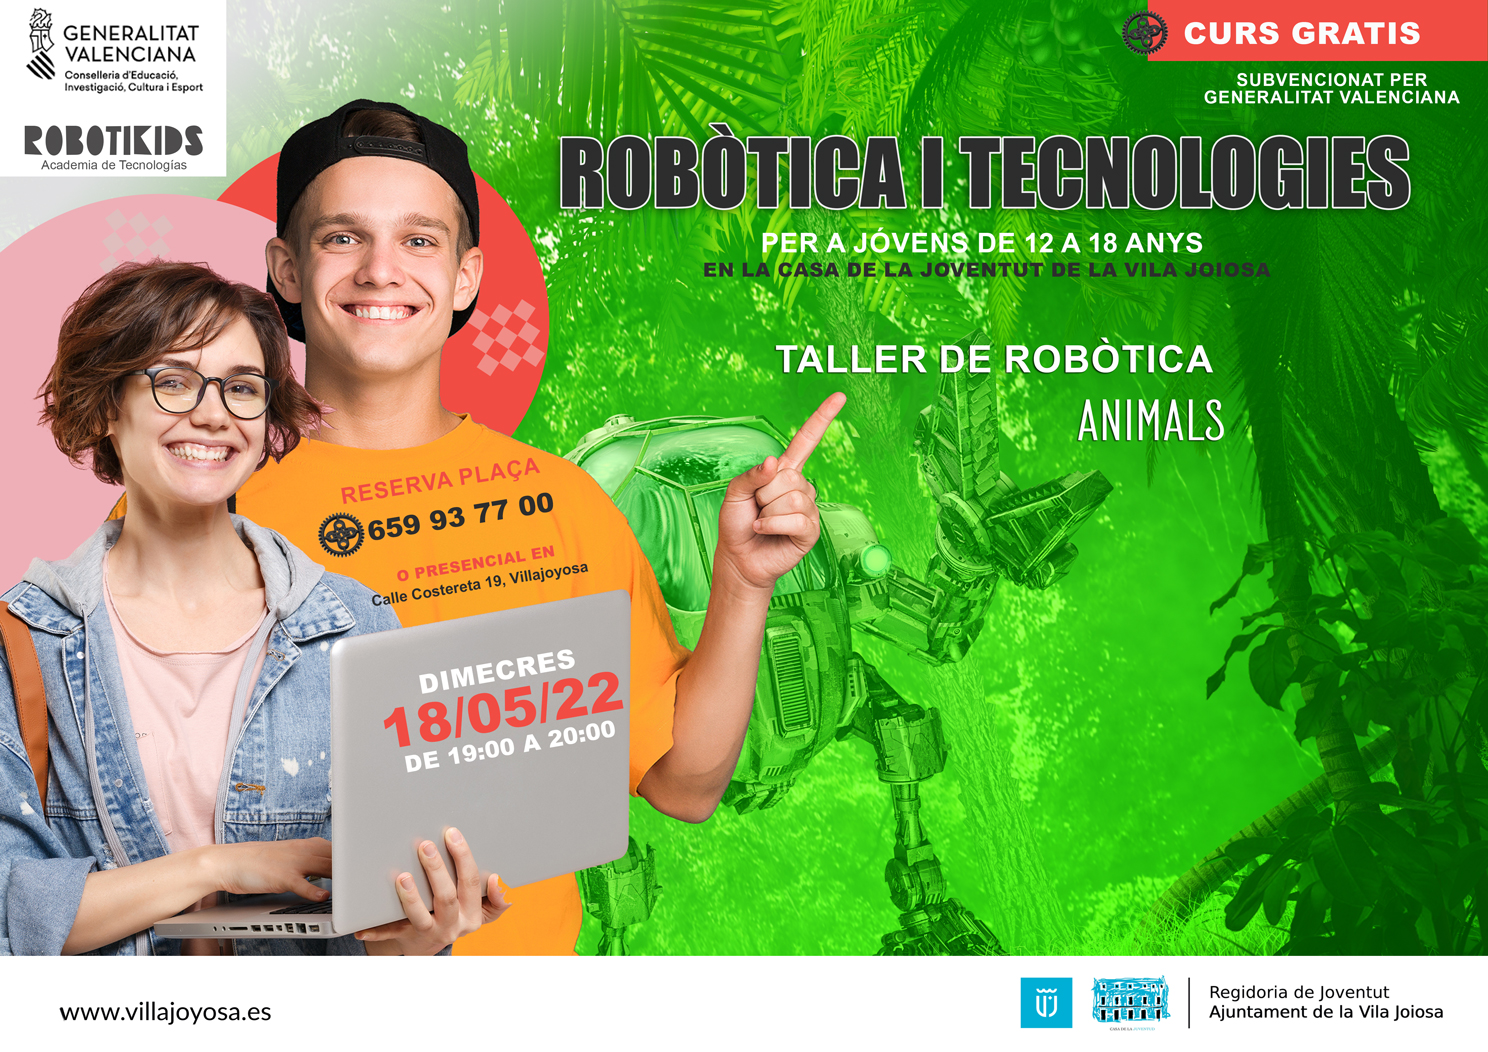 CURS ROBÒTICA I TECNOLOGIES Casa de la Joventut La Vila Joiosa